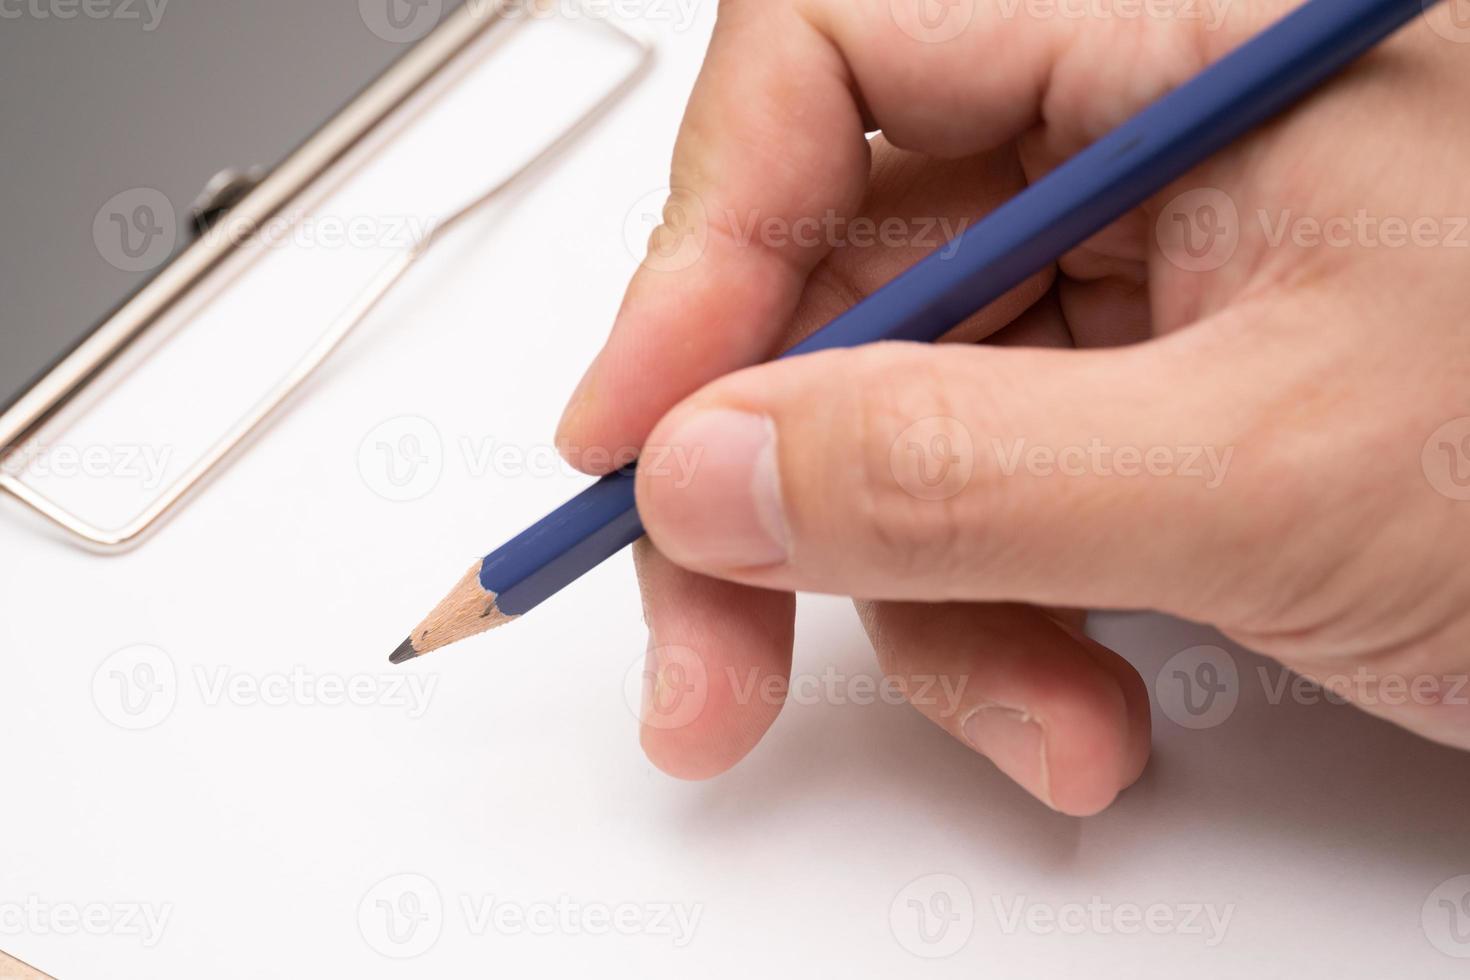 scrittura a mano sugli appunti. Stazionario. scrivi una nota su uno spazio vuoto con una matita foto